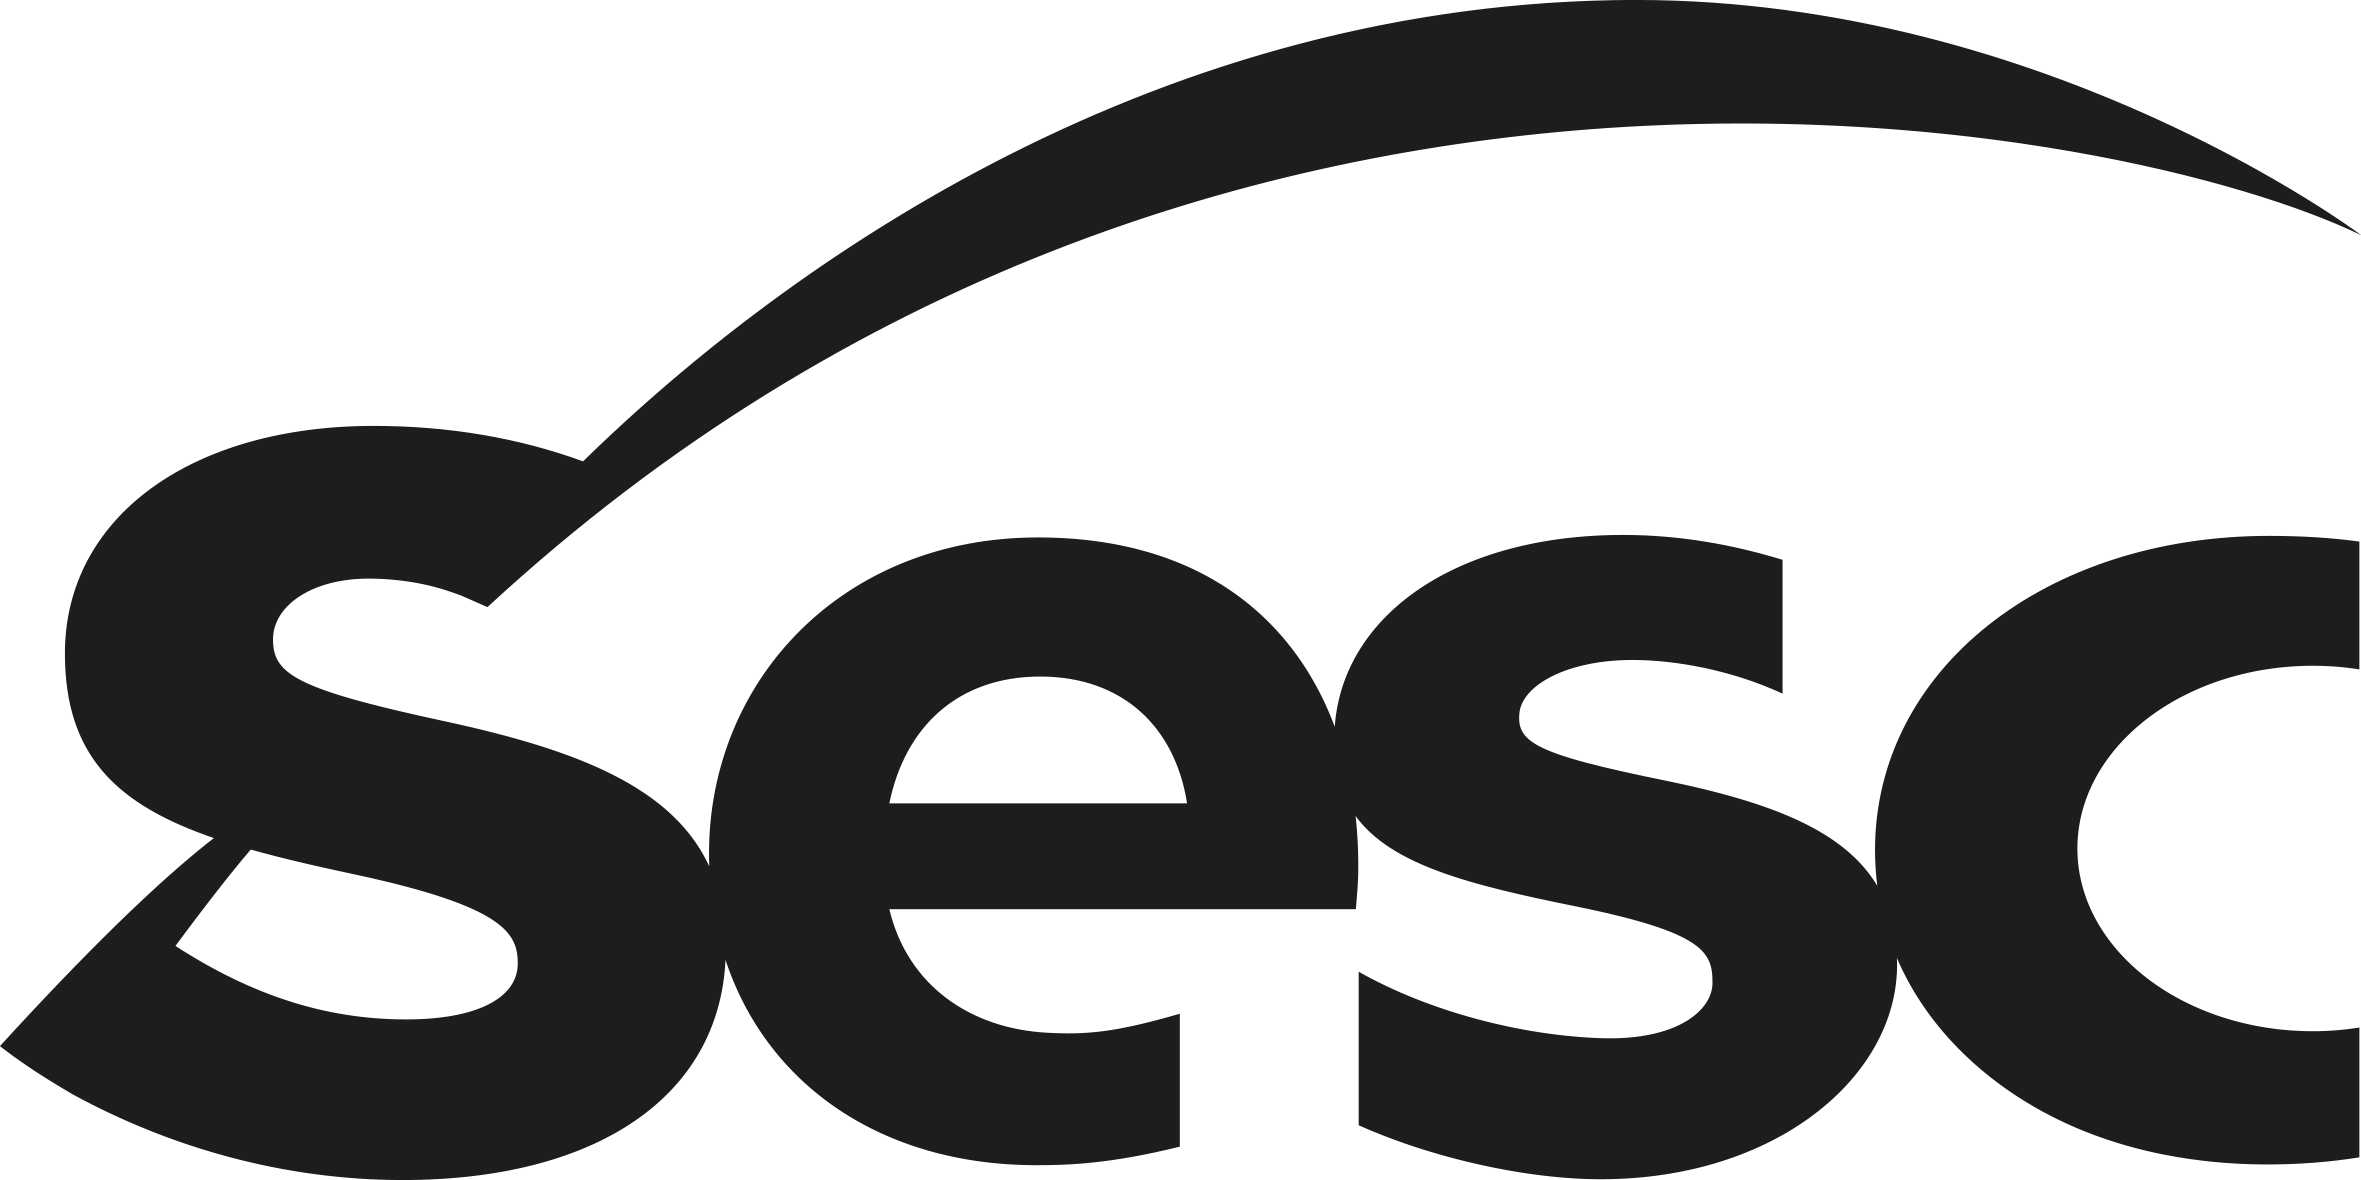 Logotipo do Sesc escrito em preto.